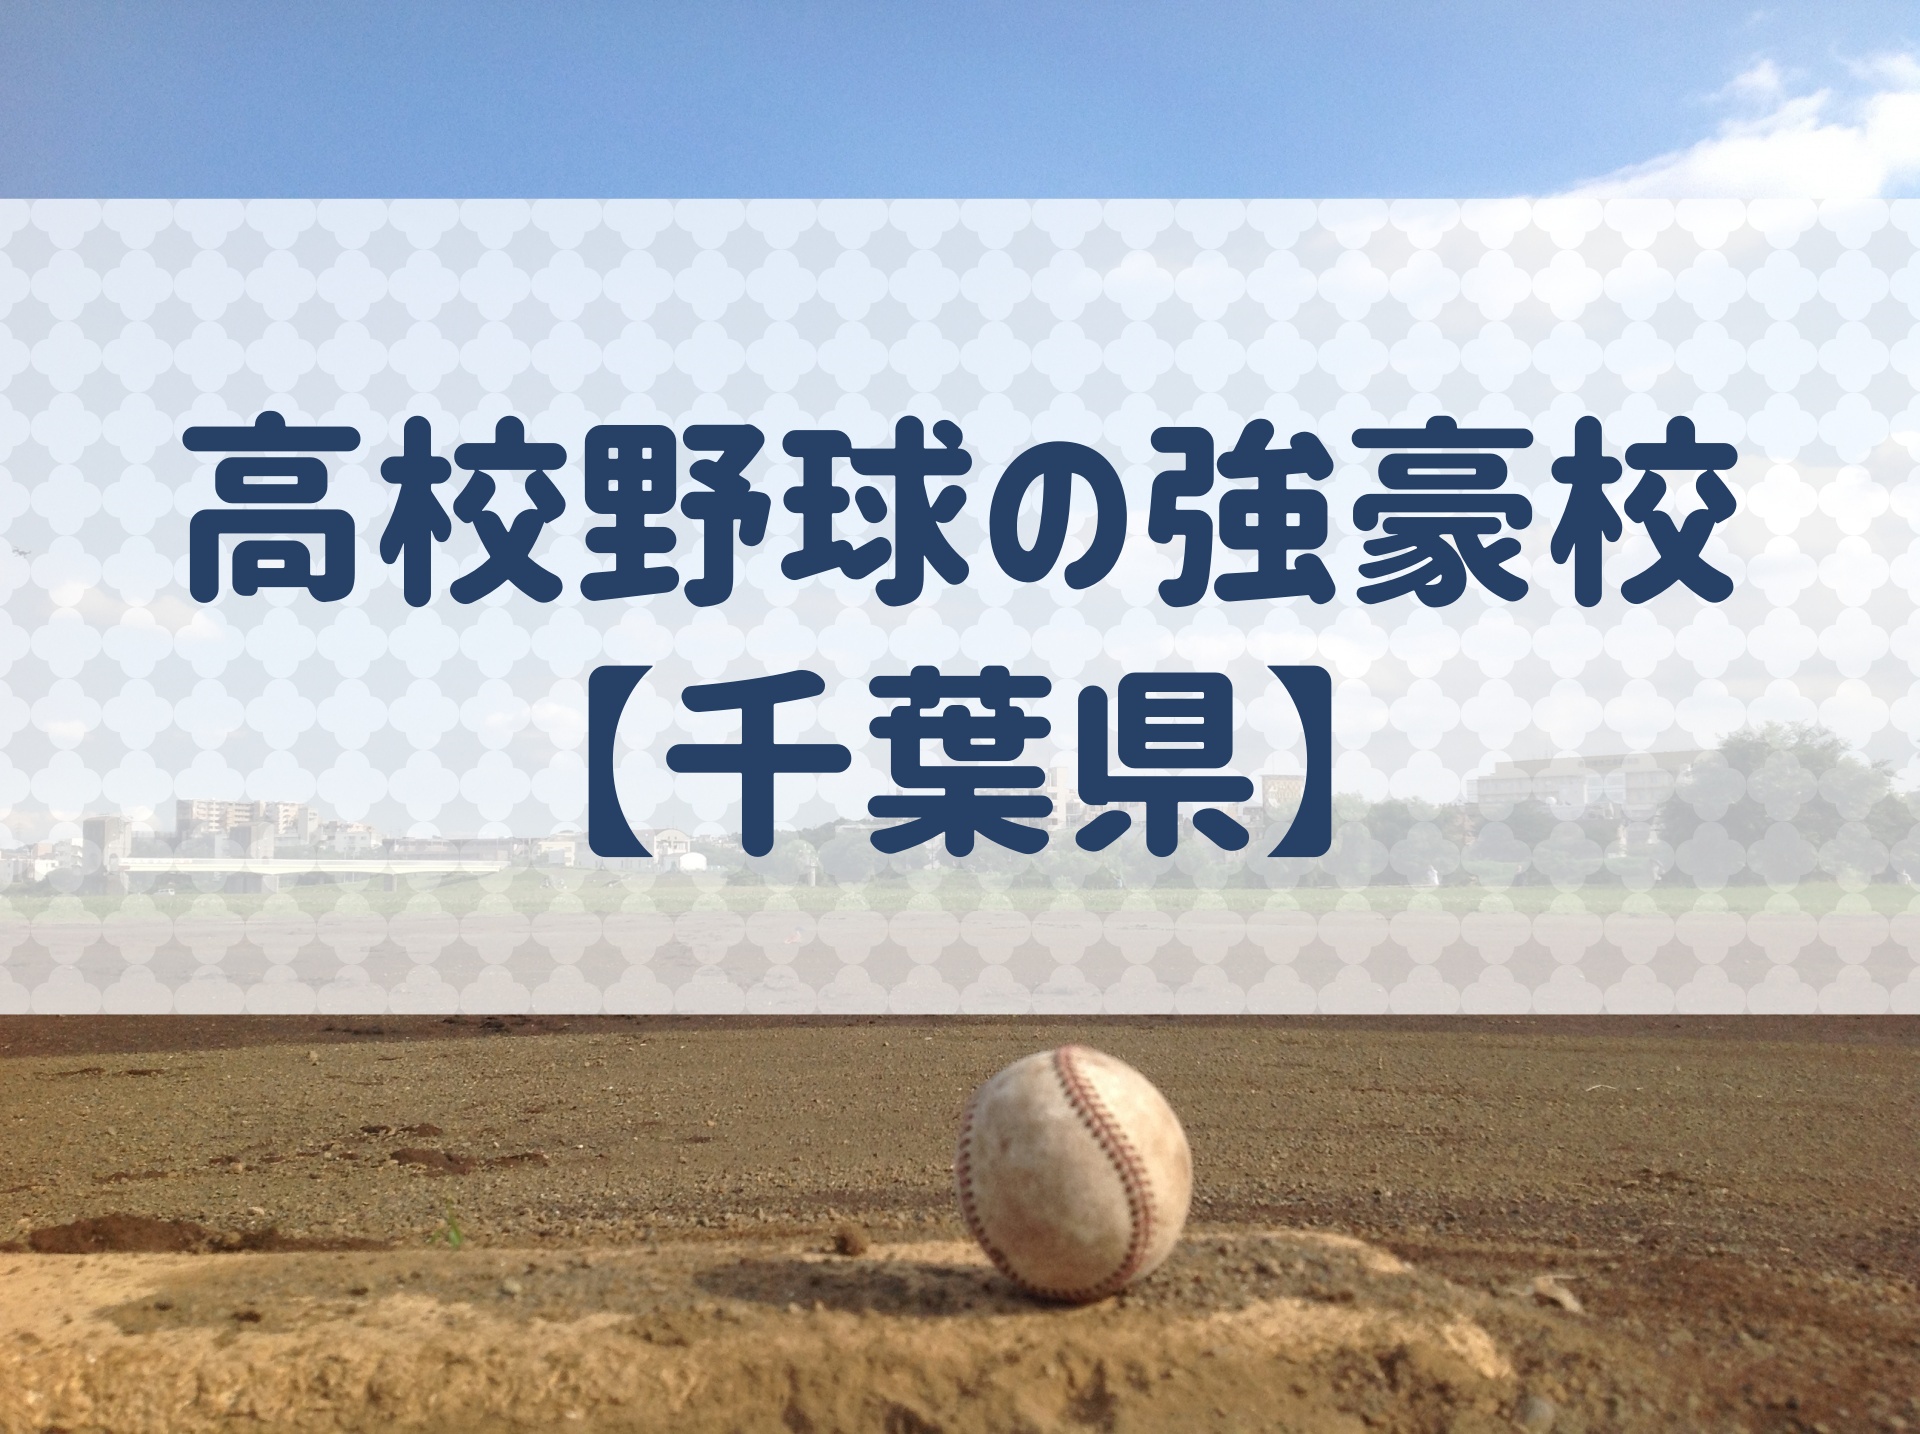 今日 の 高校 野球 千葉 県